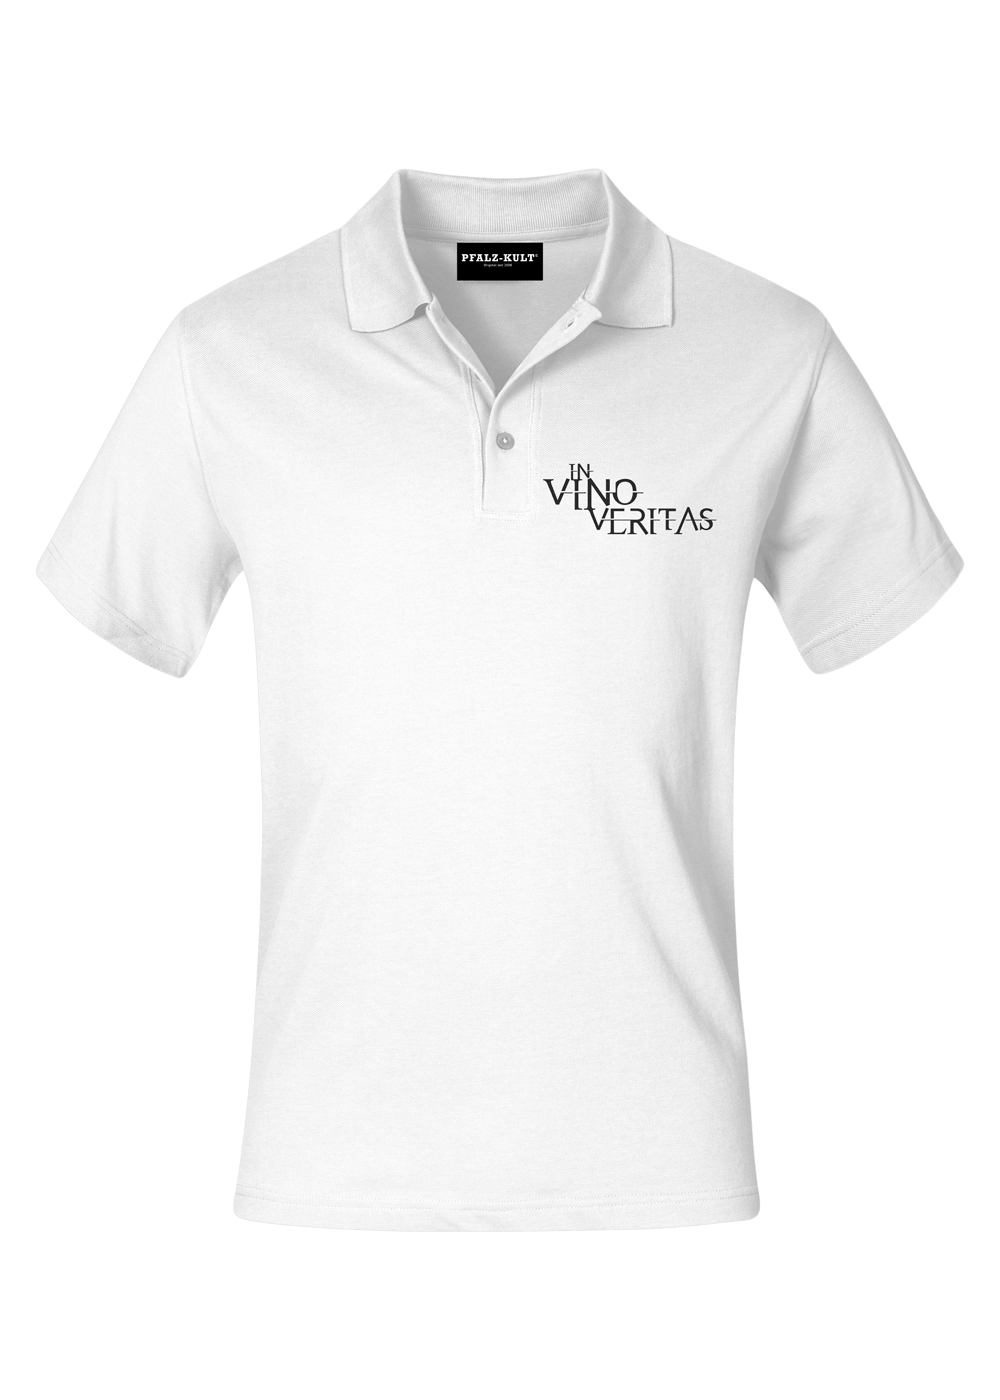 In vino veritas - Poloshirt Männer - Unisex